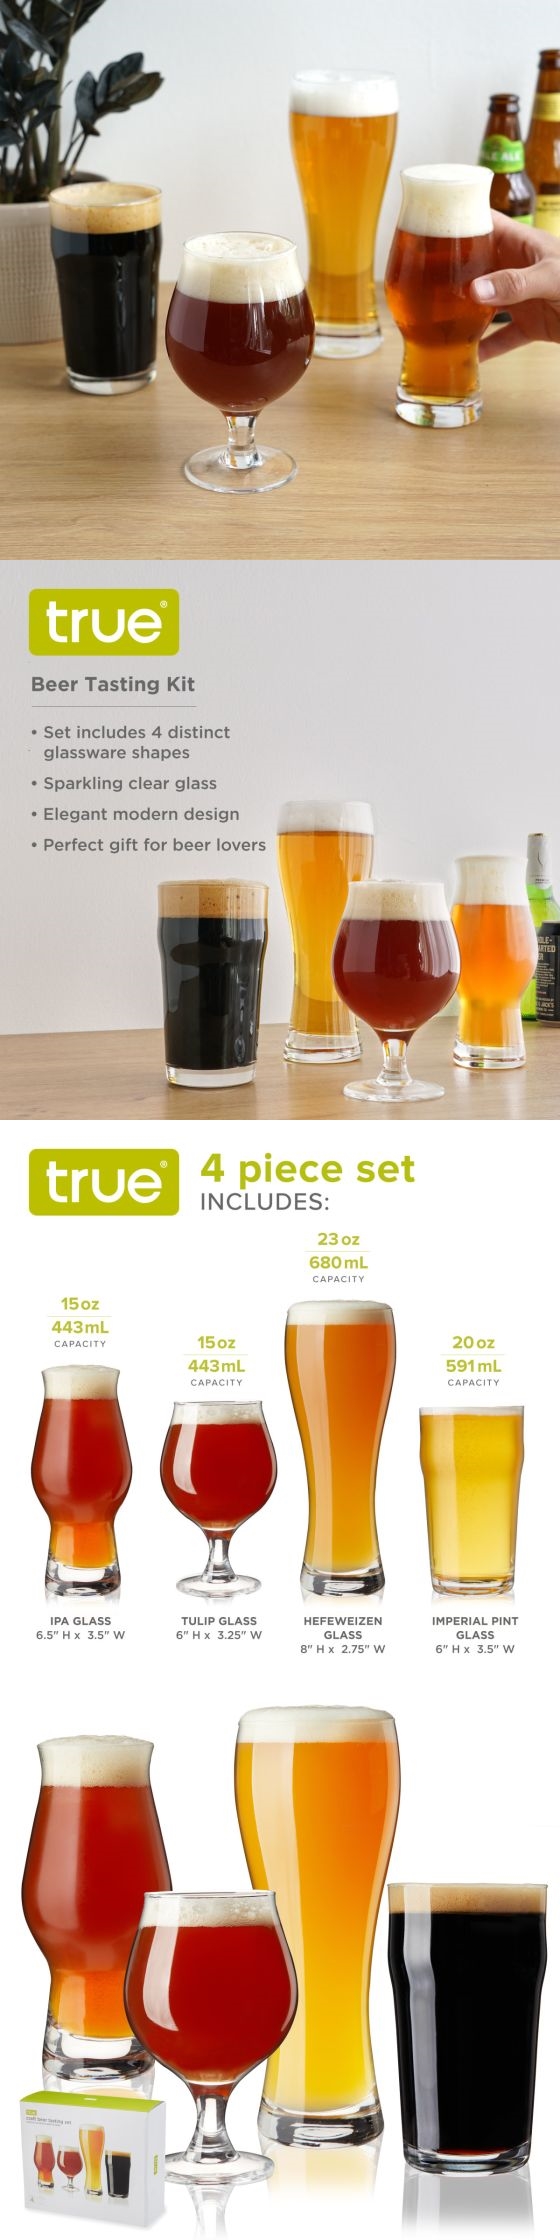 Craft Beer Tasting Kit by True (Set of 4 Distinct-Shape Beer Glasses)